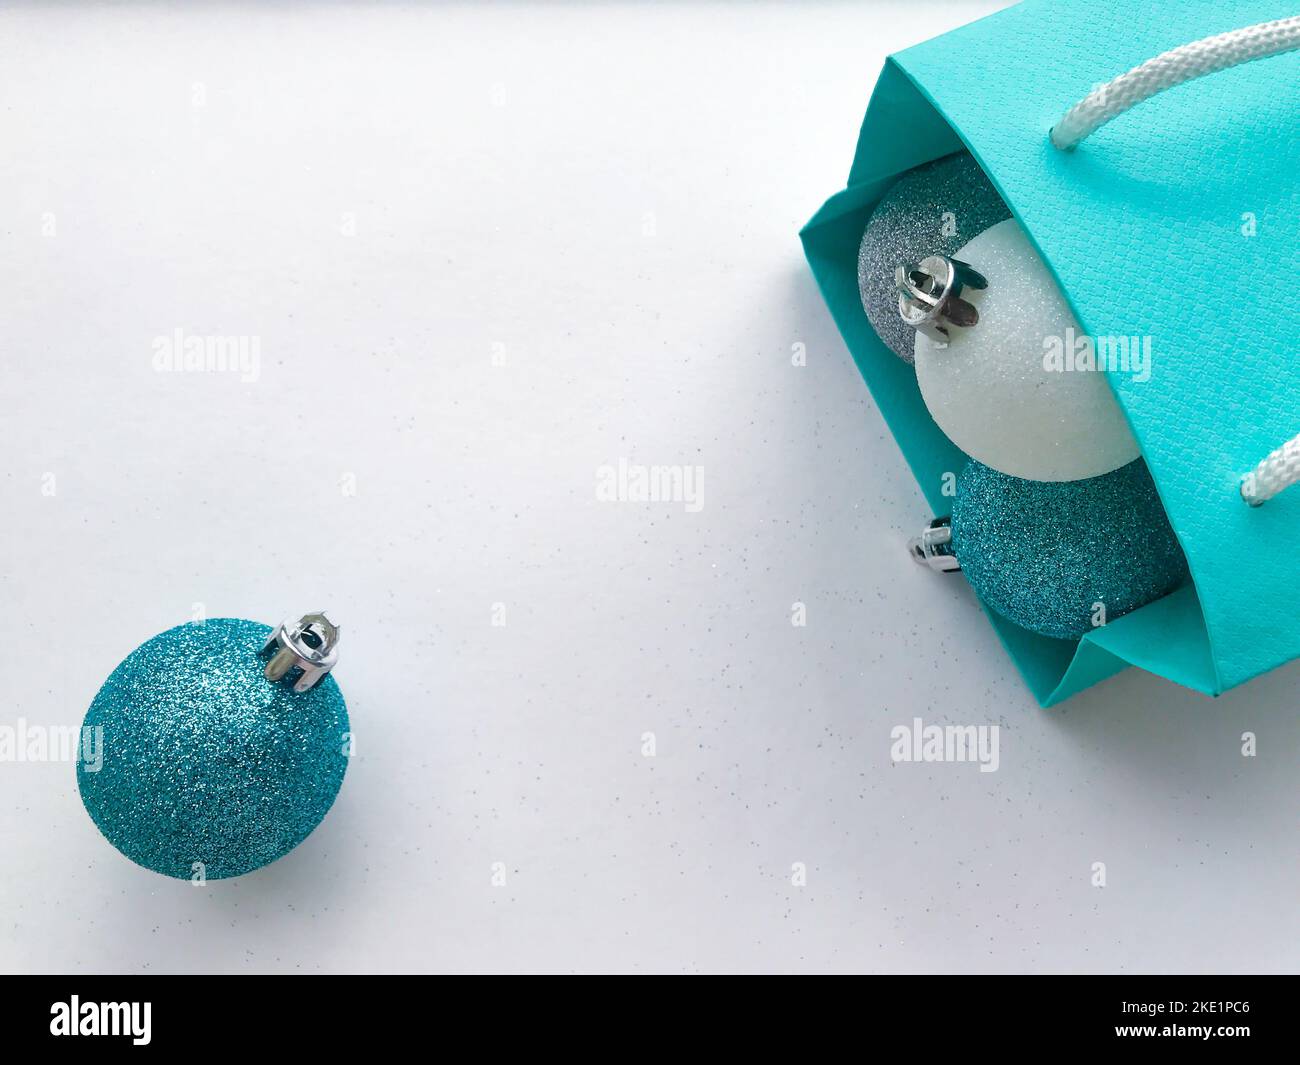 Borsa regalo in carta blu turchese, all'interno della quale sono visibili palline di Natale lucenti di colore blu, argento e bianco. Una palla turchese rotolata via e. Foto Stock